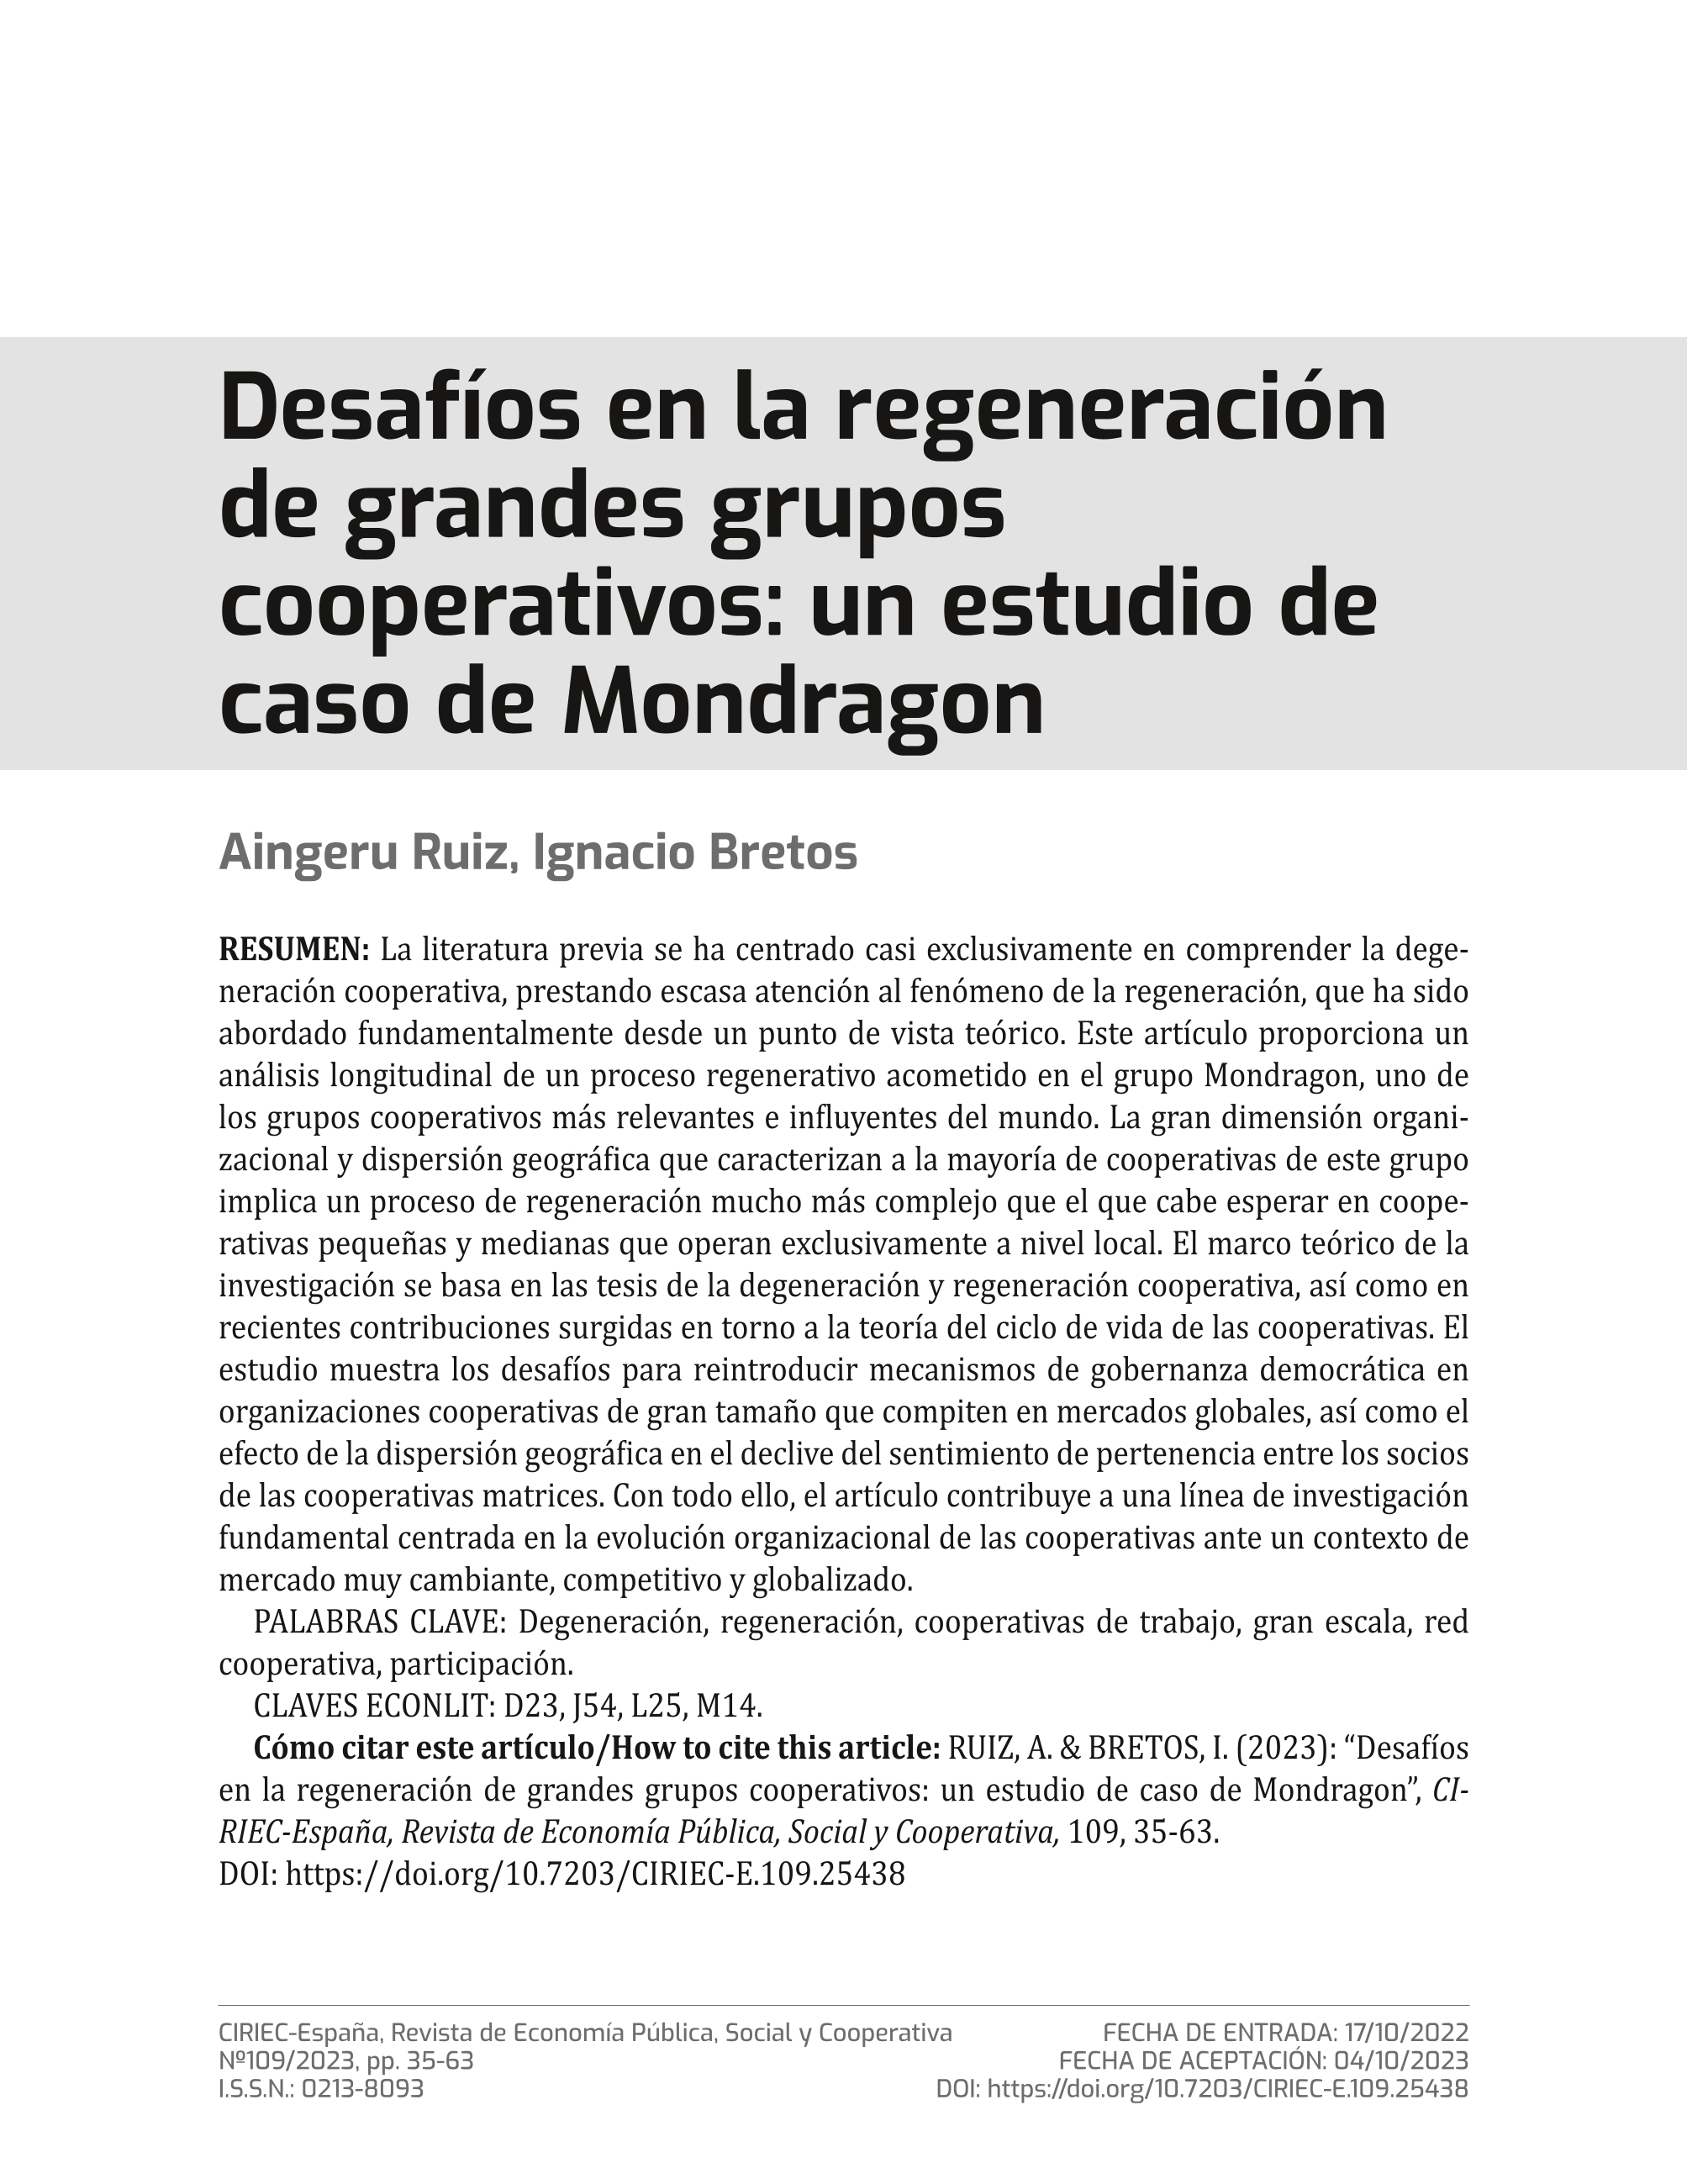 Desafíos en la regeneración de grandes grupos cooperativos: un estudio de caso de Mondragon